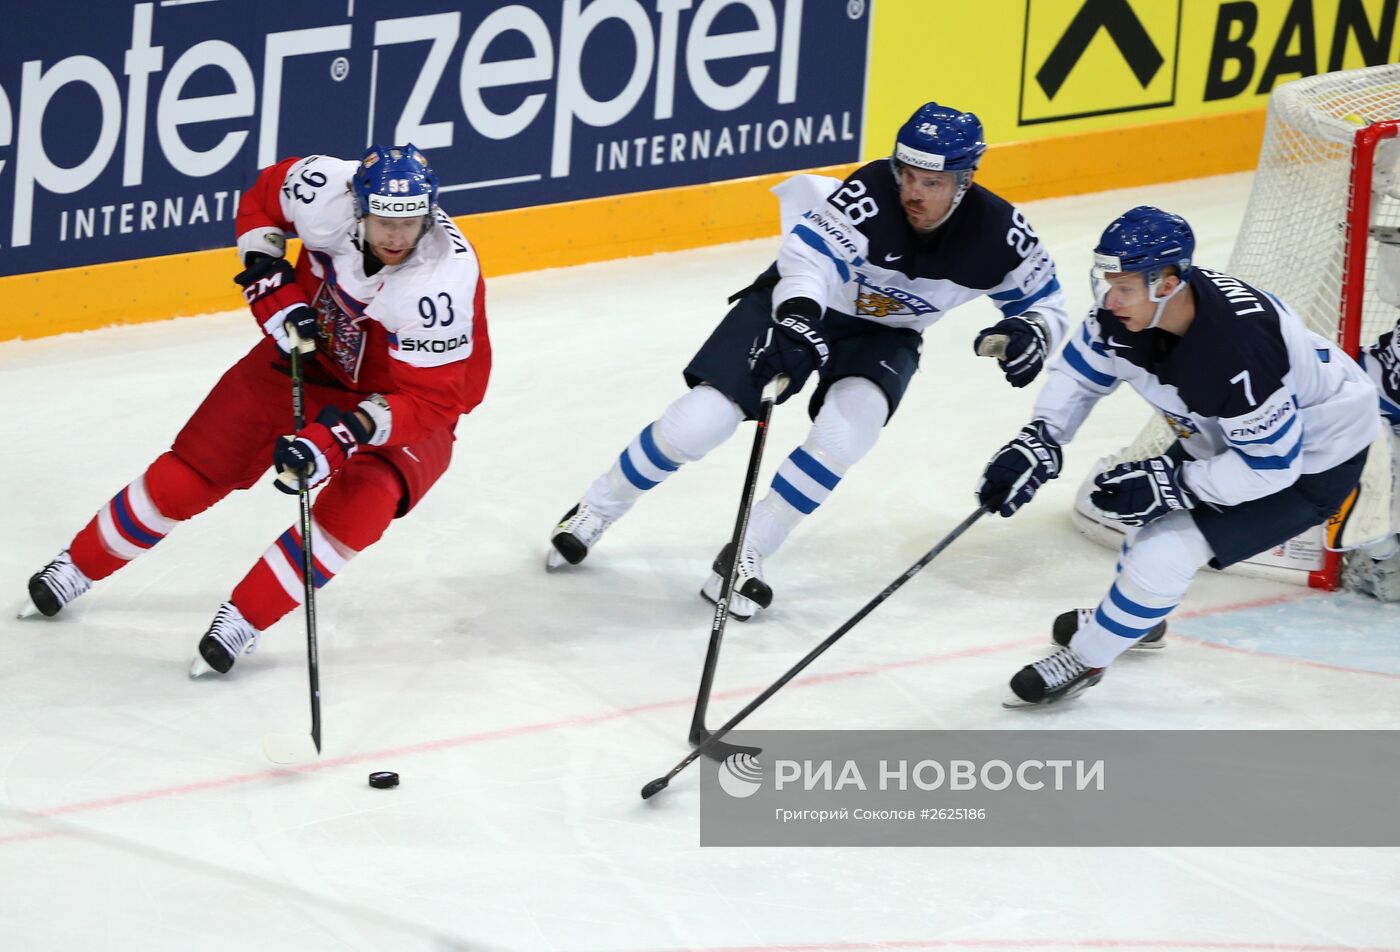 Хоккей. Чемпионат мира - 2015. Матч Финляндия - Чехия